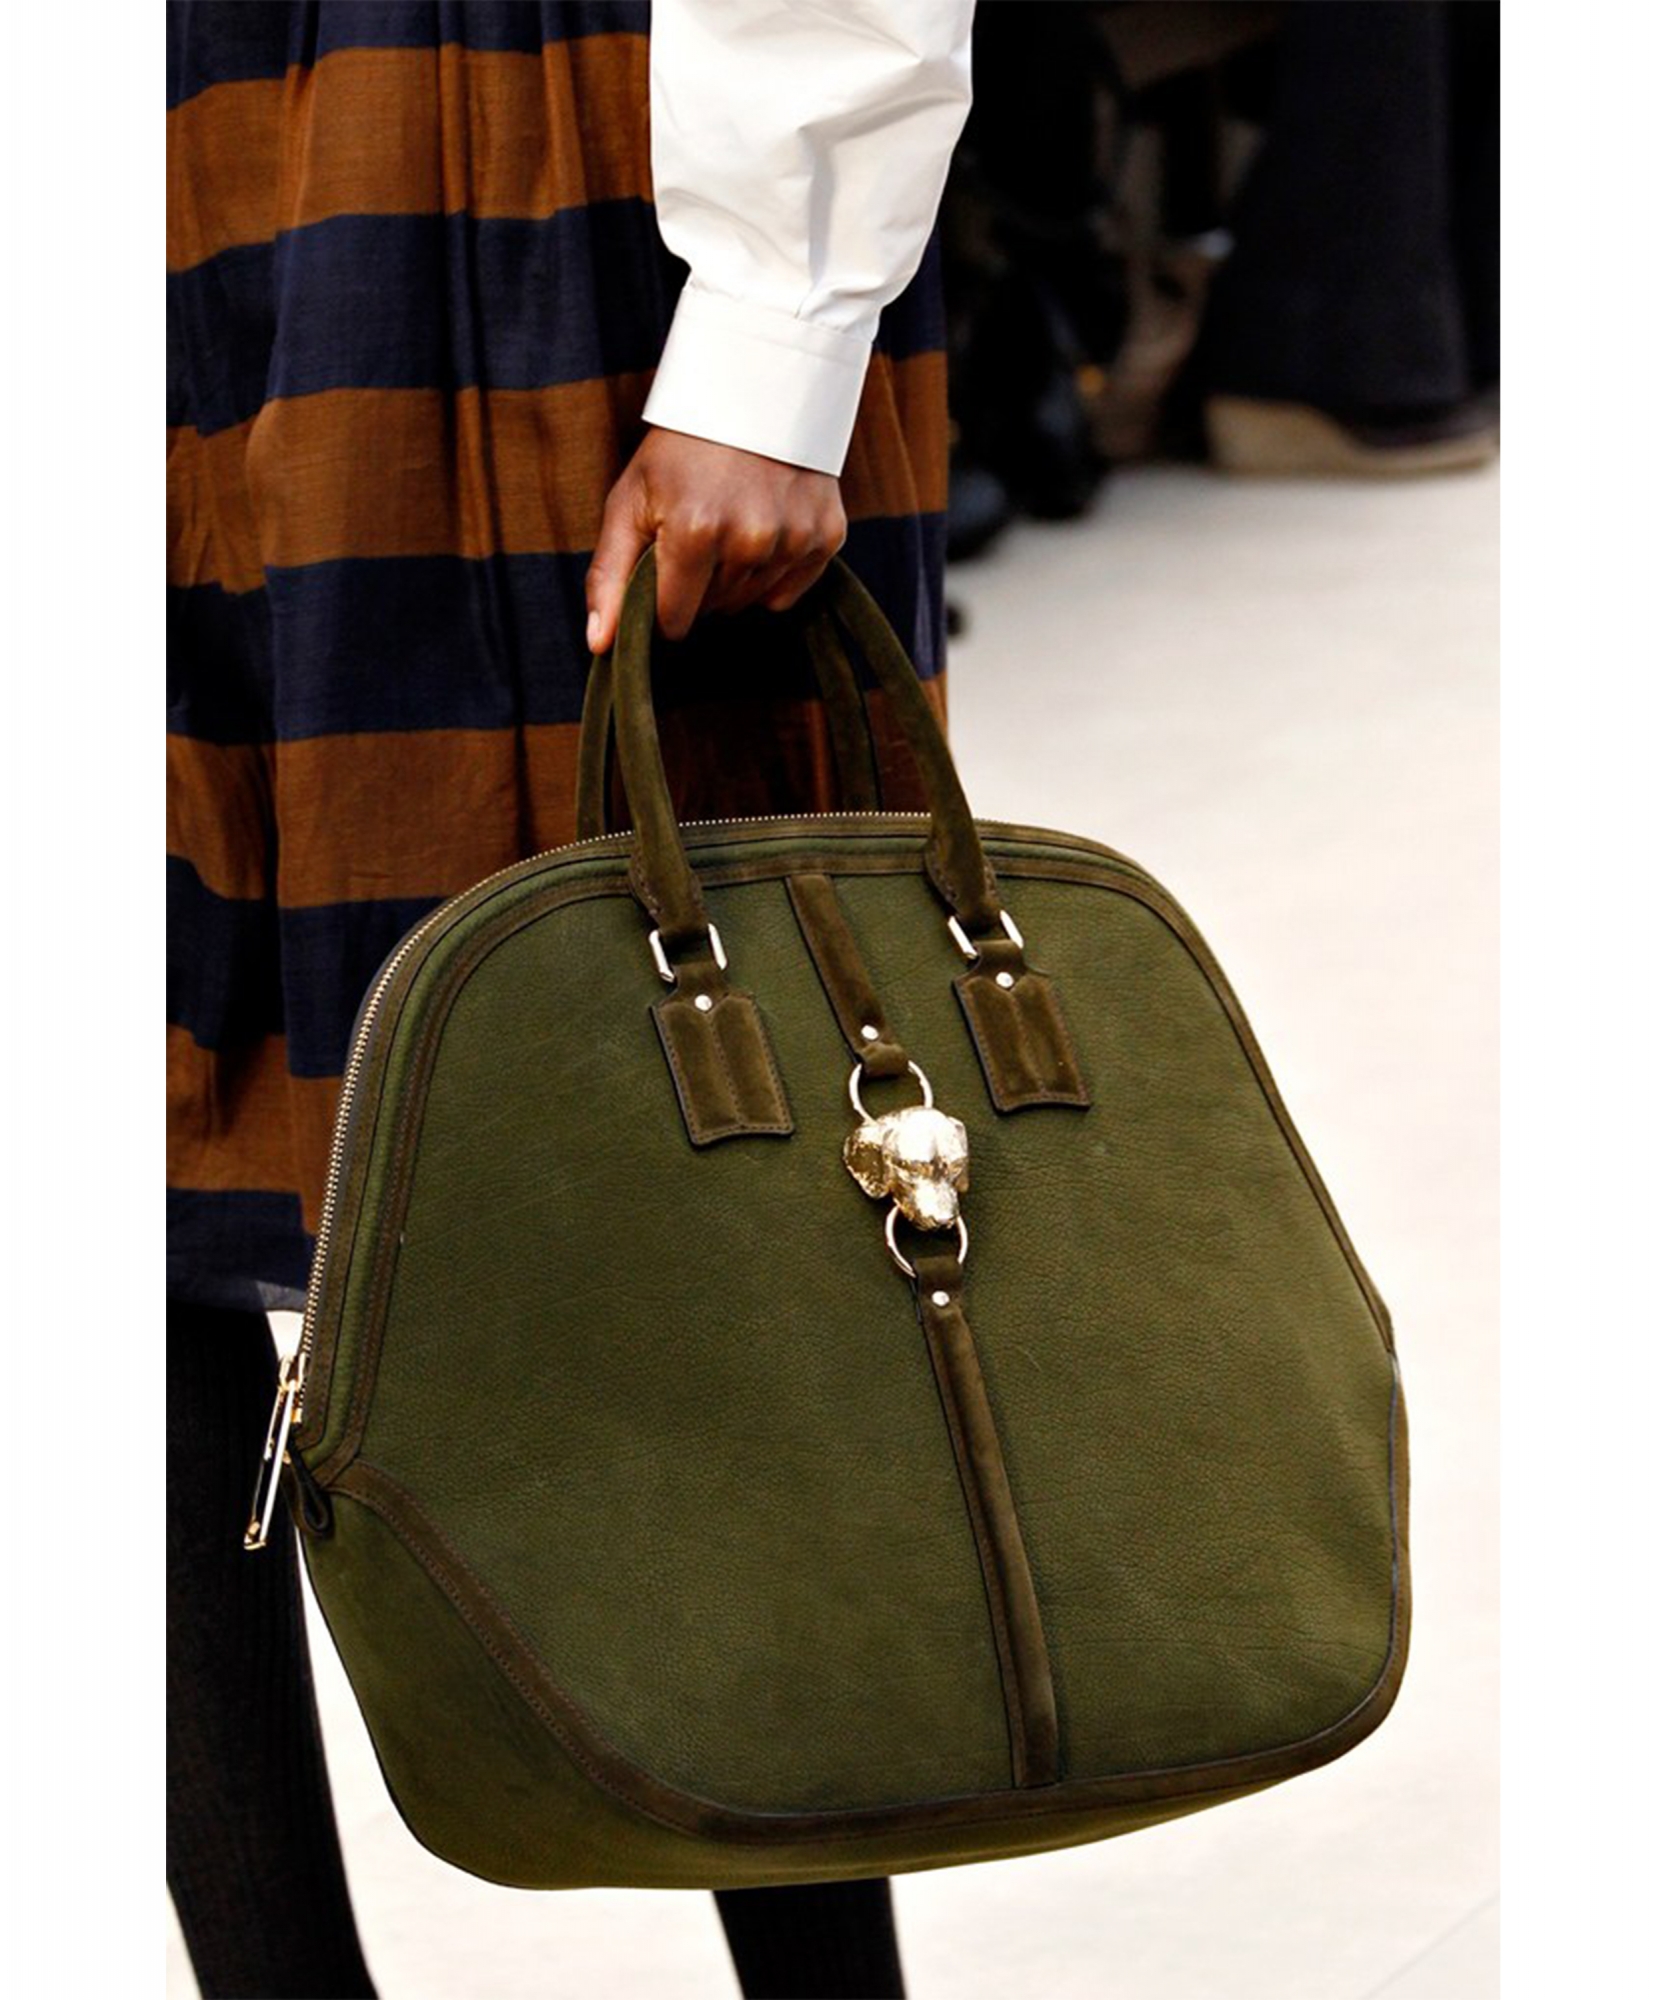 burberry prorsum handbag